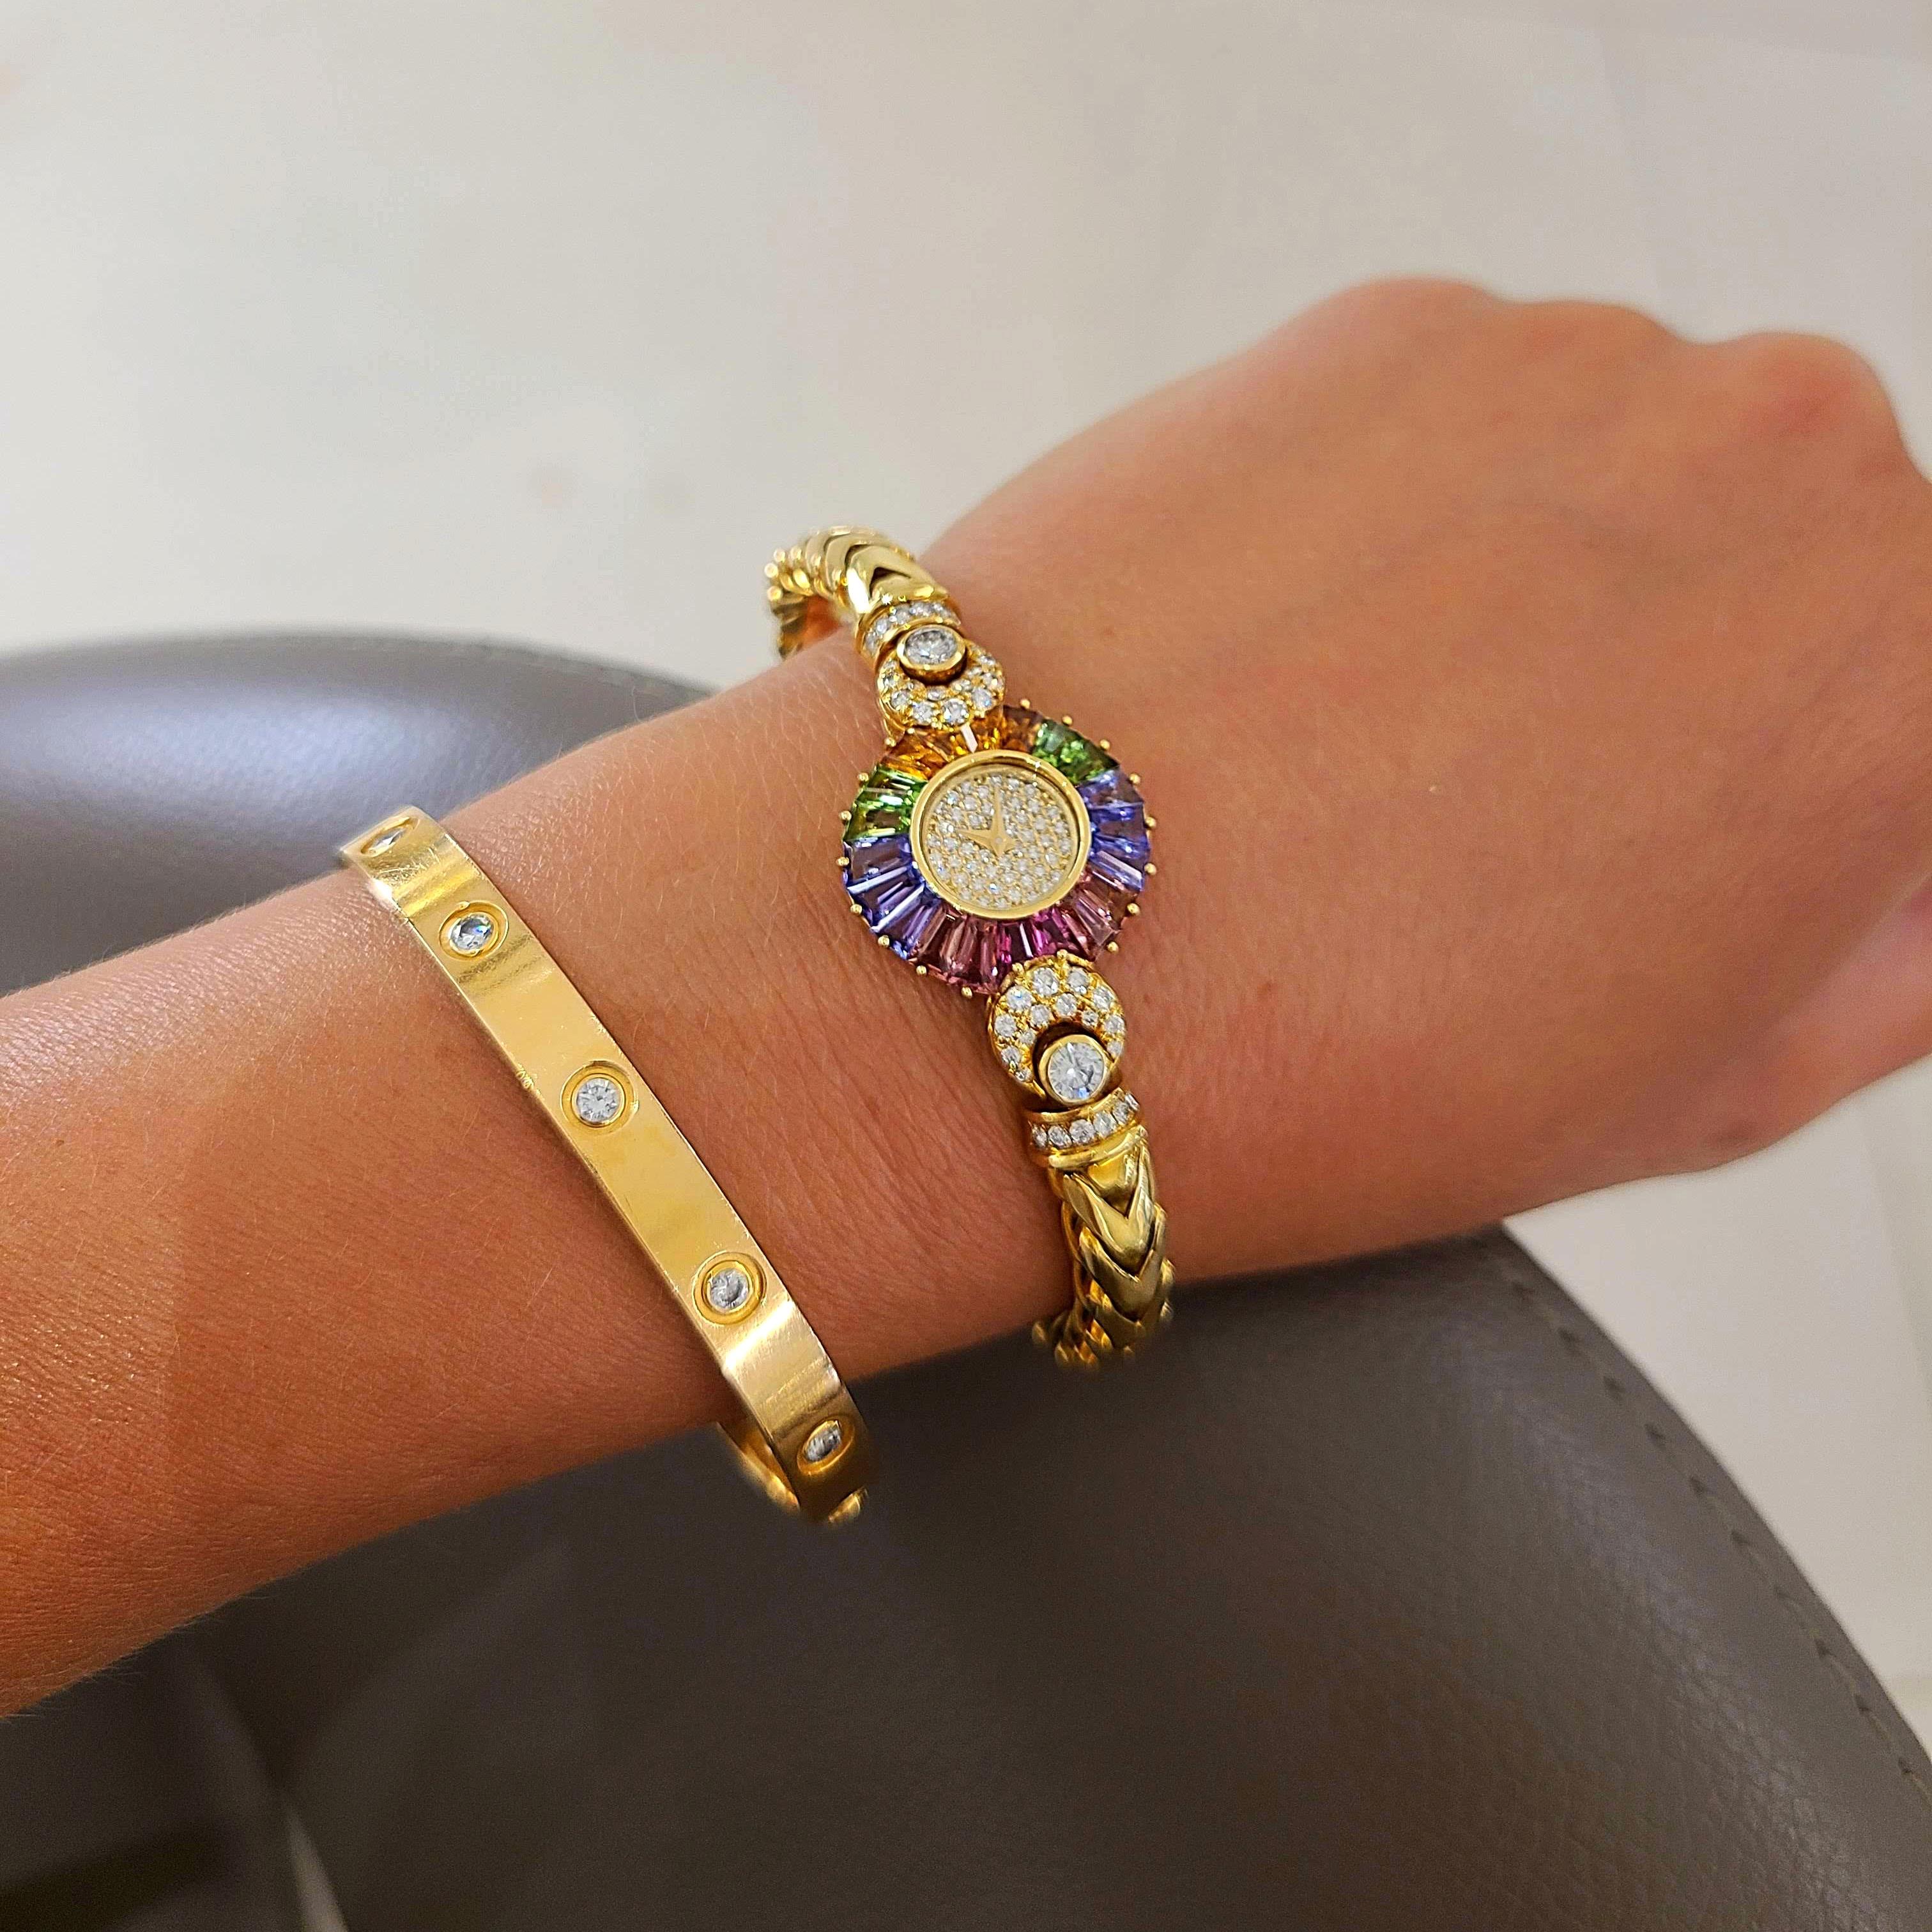 DeLaneau wurde 1949 von einer Frau in der Schweiz gegründet.  Sie sind eine der ersten Uhrenfirmen, die ihre gesamte Kollektion den Damenuhren gewidmet haben.
Das Zifferblatt dieser Uhr aus 18 Karat Gelbgold ist mit Diamanten besetzt. Die Lünette